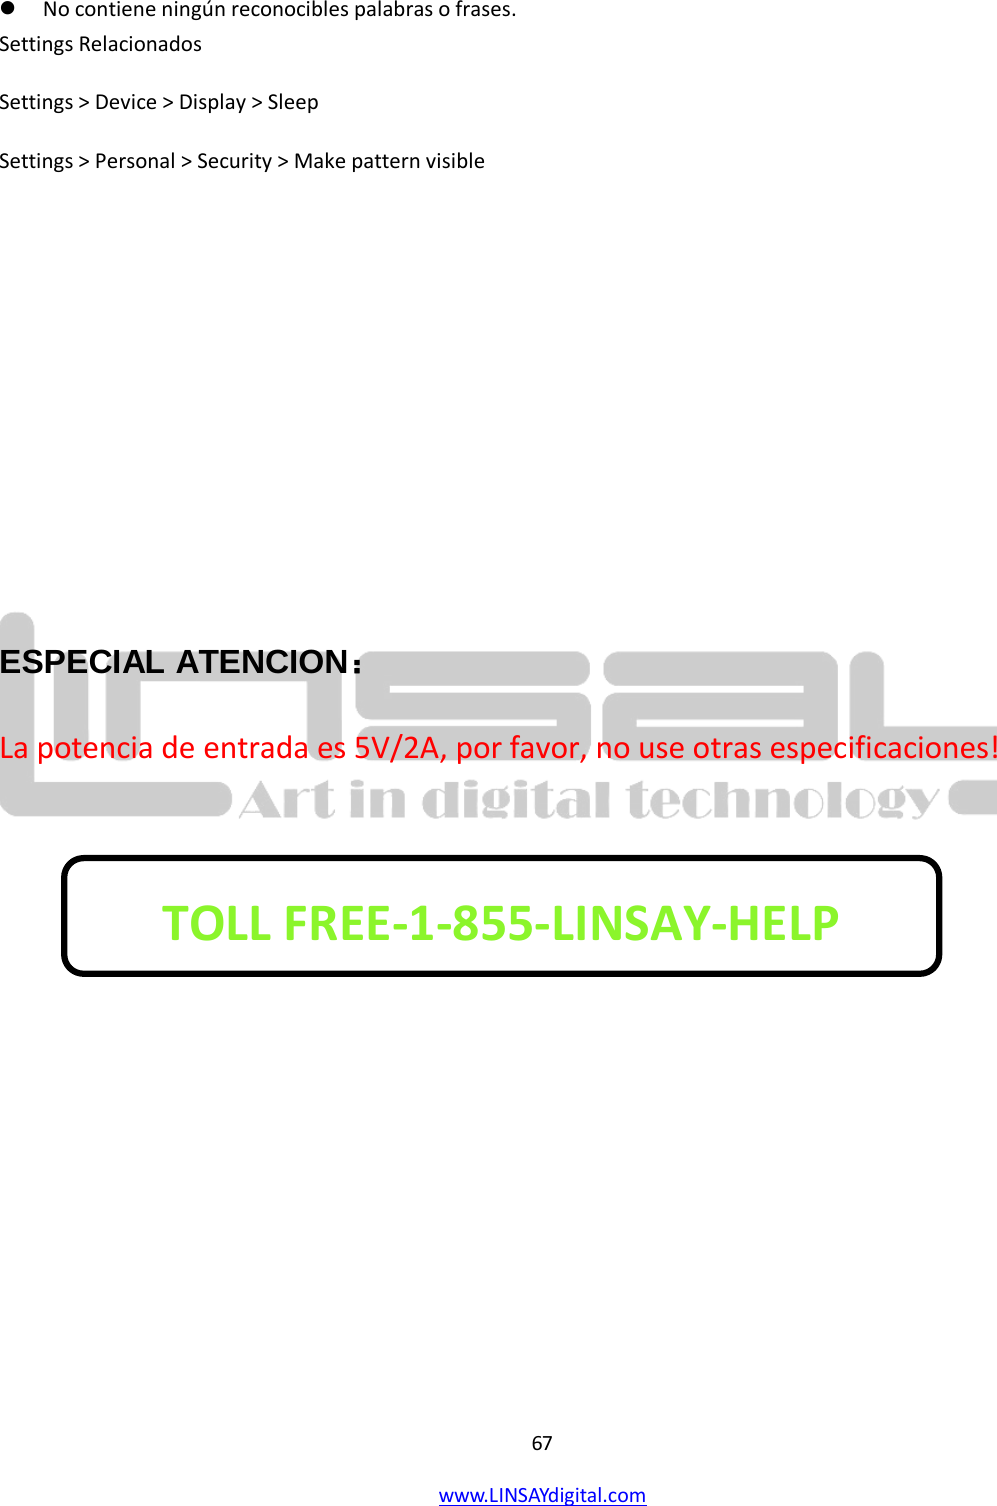  67 www.LINSAYdigital.com    No contiene ningún reconocibles palabras o frases. Settings Relacionados Settings &gt; Device &gt; Display &gt; Sleep Settings &gt; Personal &gt; Security &gt; Make pattern visible      ESPECIAL ATENCION： La potencia de entrada es 5V/2A, por favor, no use otras especificaciones!        TOLL FREE-1-855-LINSAY-HELP  